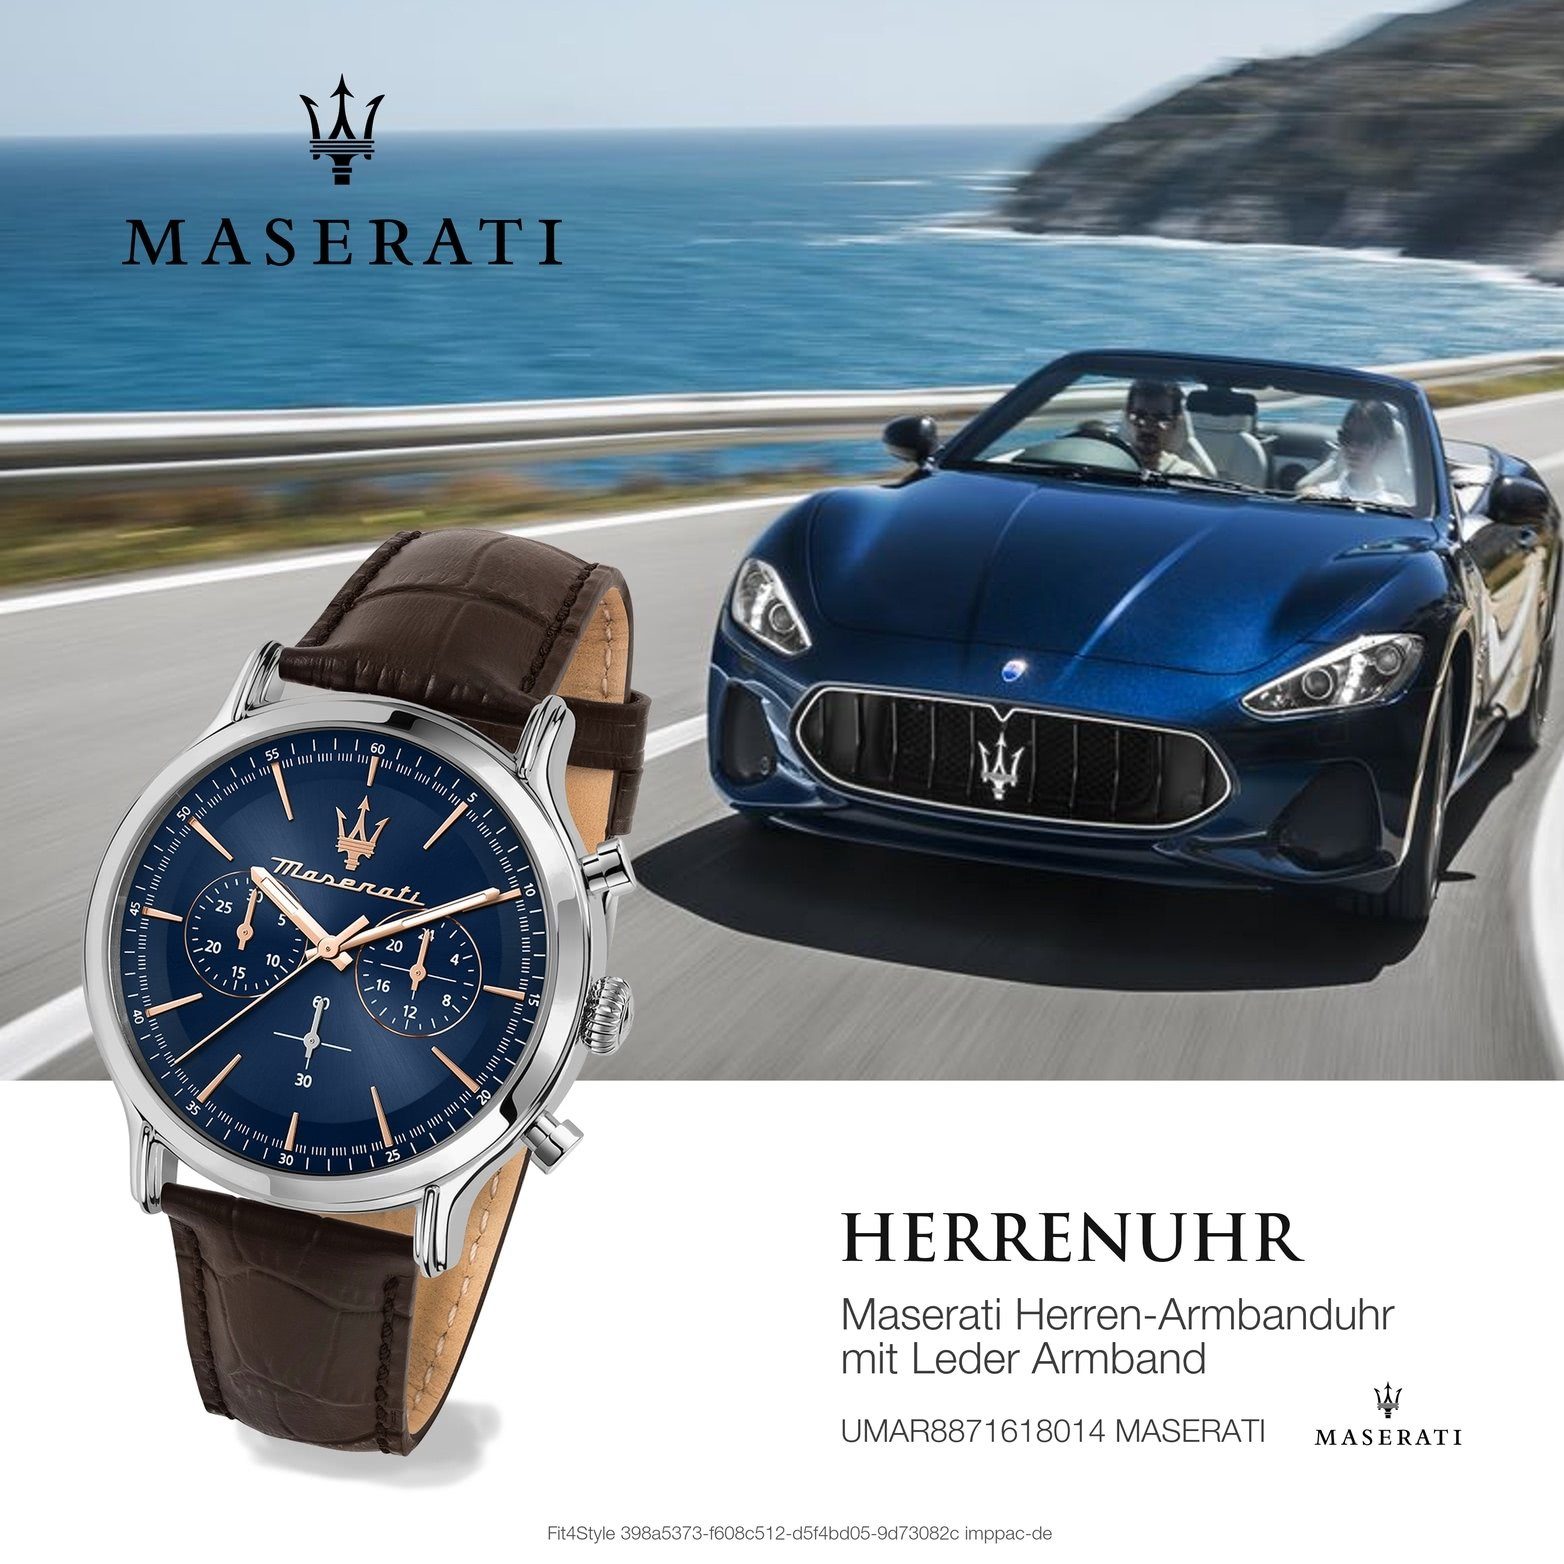 Gehäuse, Lederarmband, 42mm) Chronograph Maserati rundes groß Leder blau (ca. Armband-Uhr, MASERATI Herrenuhr